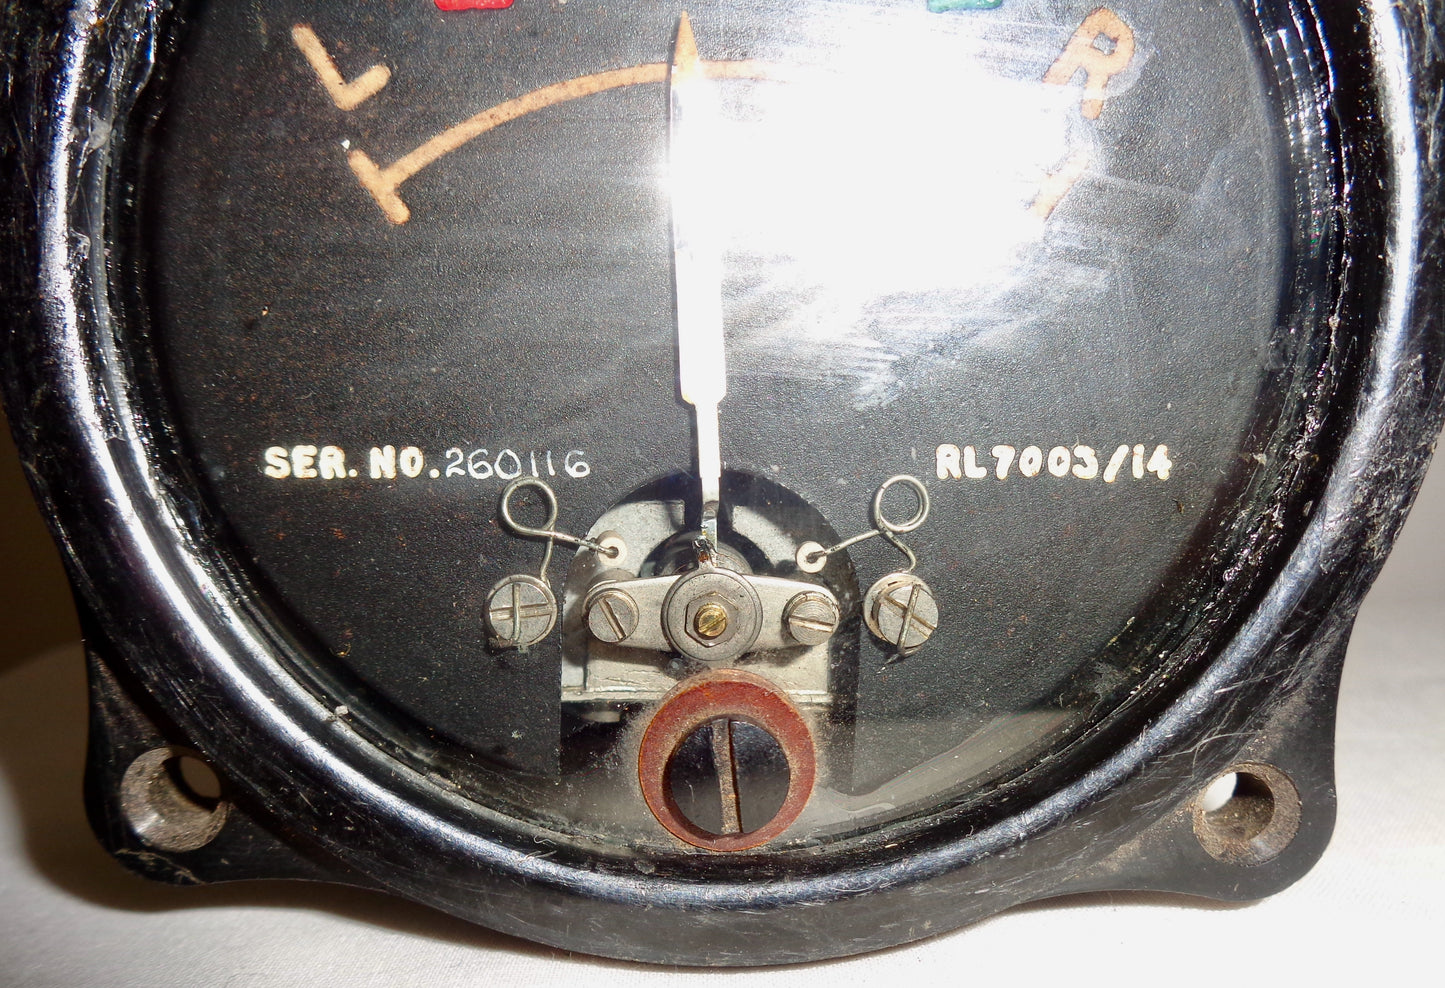 Vintage Airplane RL7003/14 Homing Indicator Turn Meter